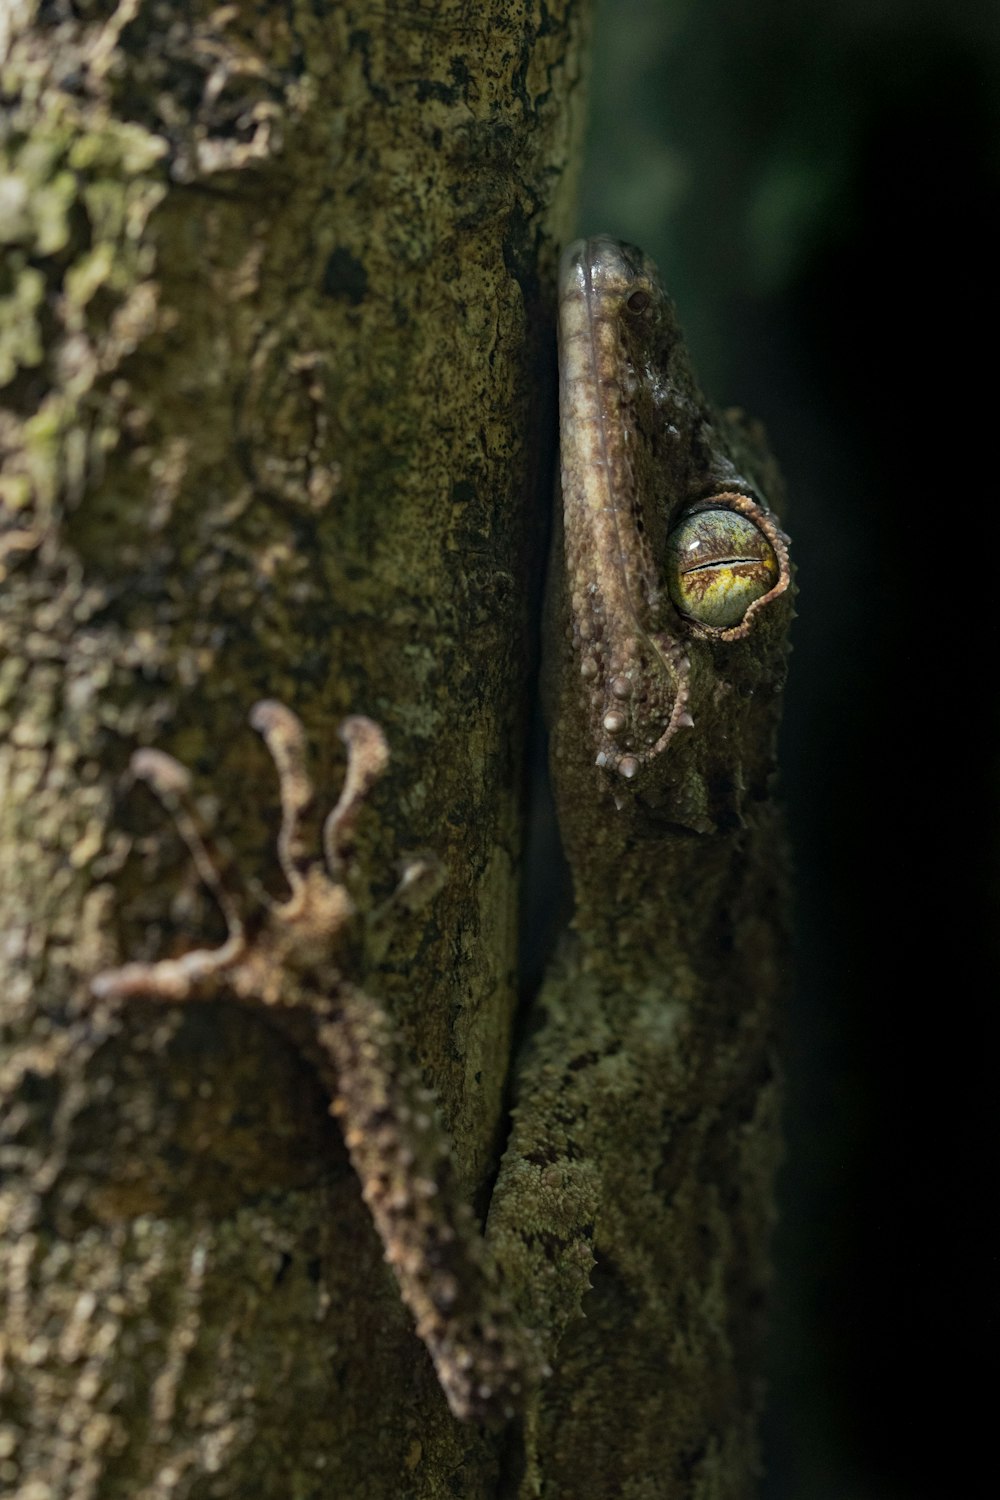 lagarto marrom e branco no galho marrom da árvore